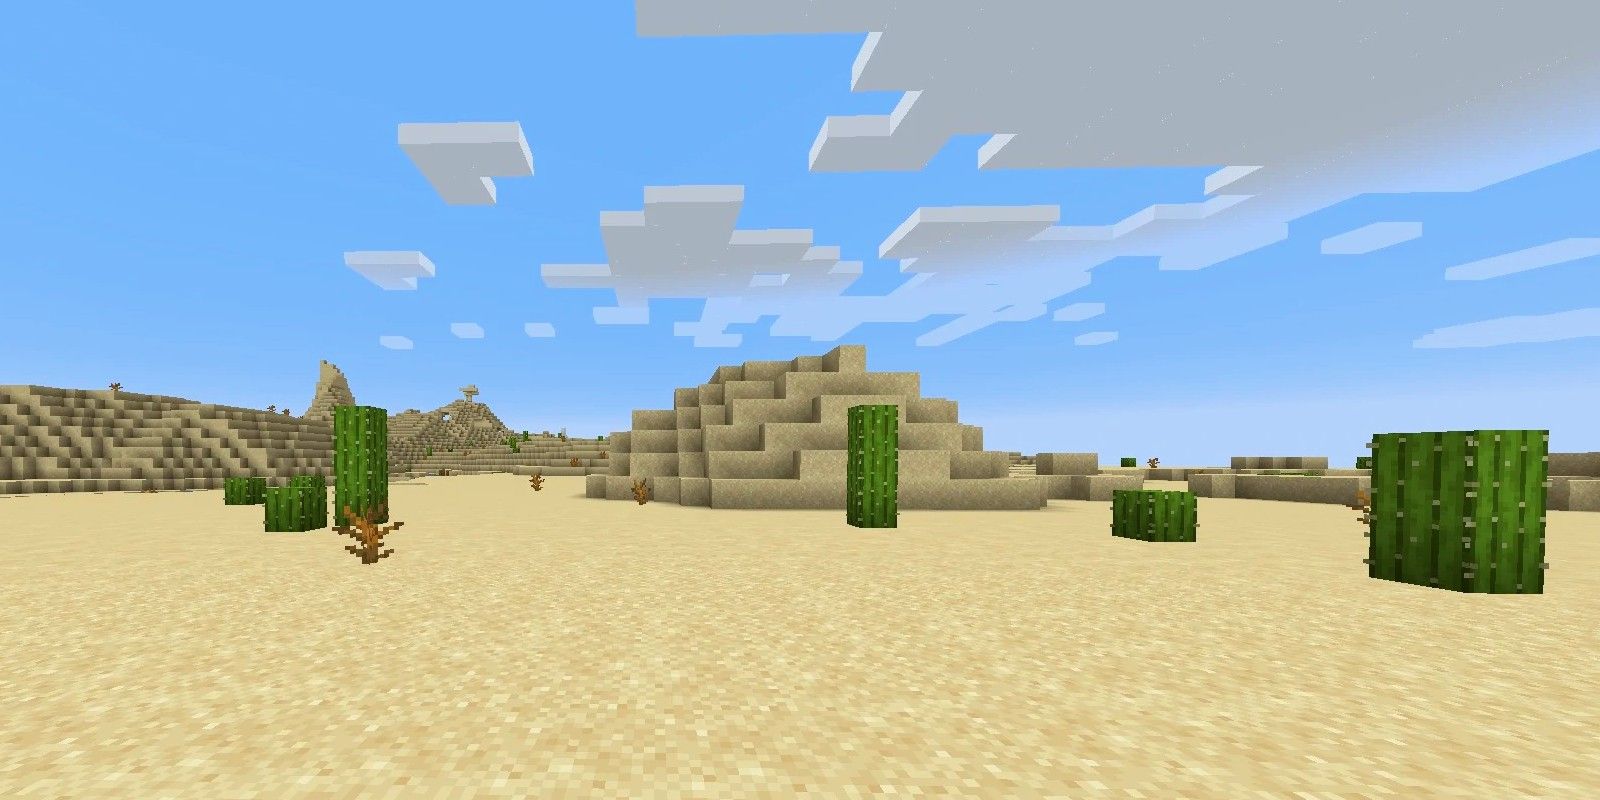 A Desert in Minecraft